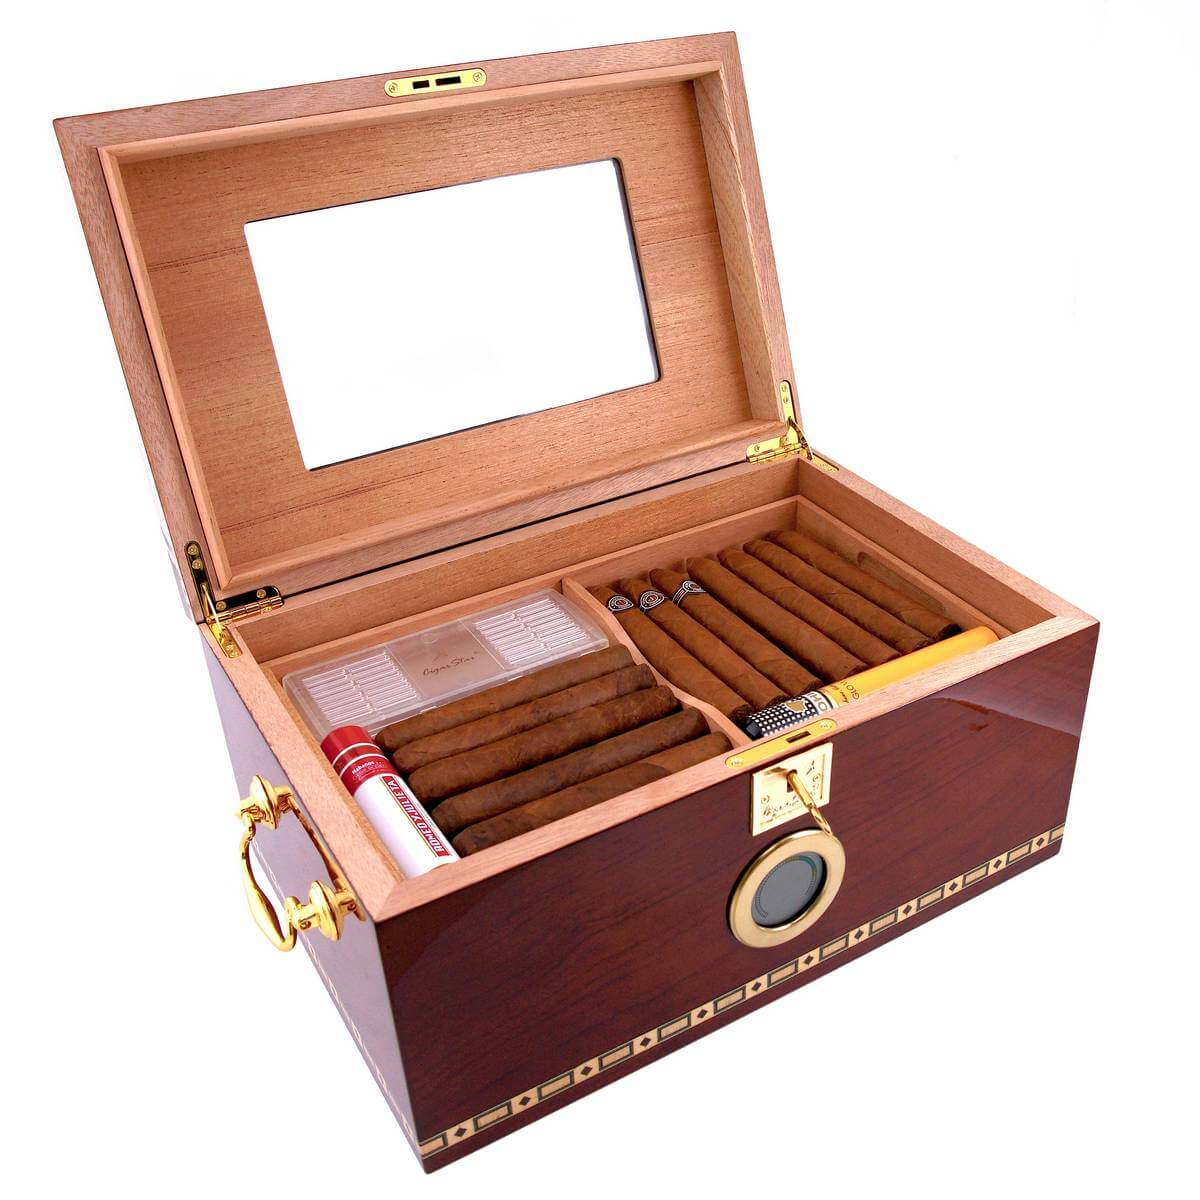 Indien seng Atticus Havana Dreams 2.0 200 Cigar Limited Edition Cigar Humidor | Cigar Star